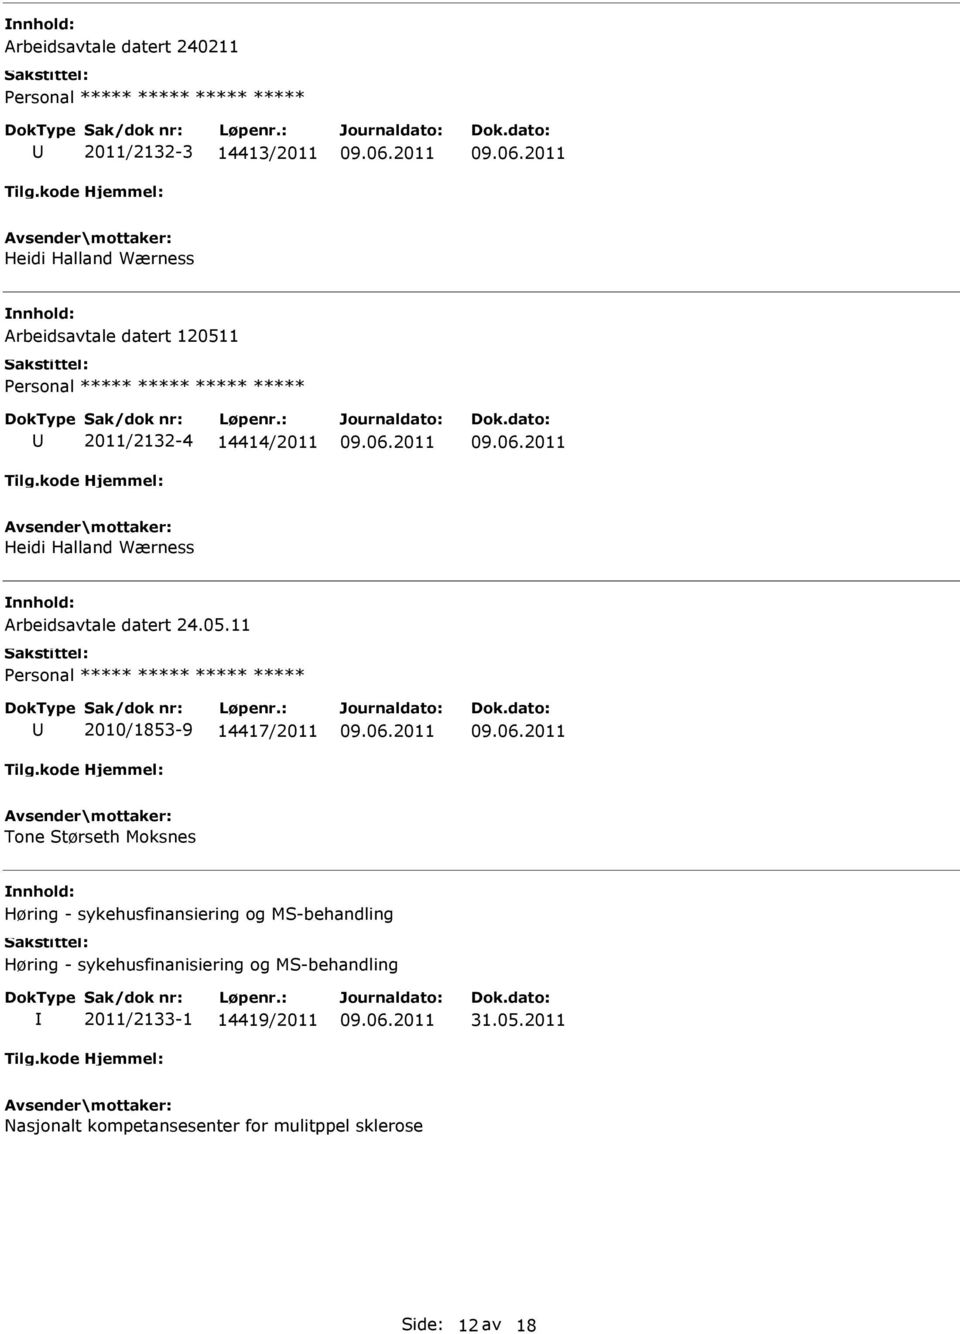 11 ***** 2010/1853-9 14417/2011 Tone Størseth Moksnes Høring - sykehusfinansiering og MS-behandling Høring